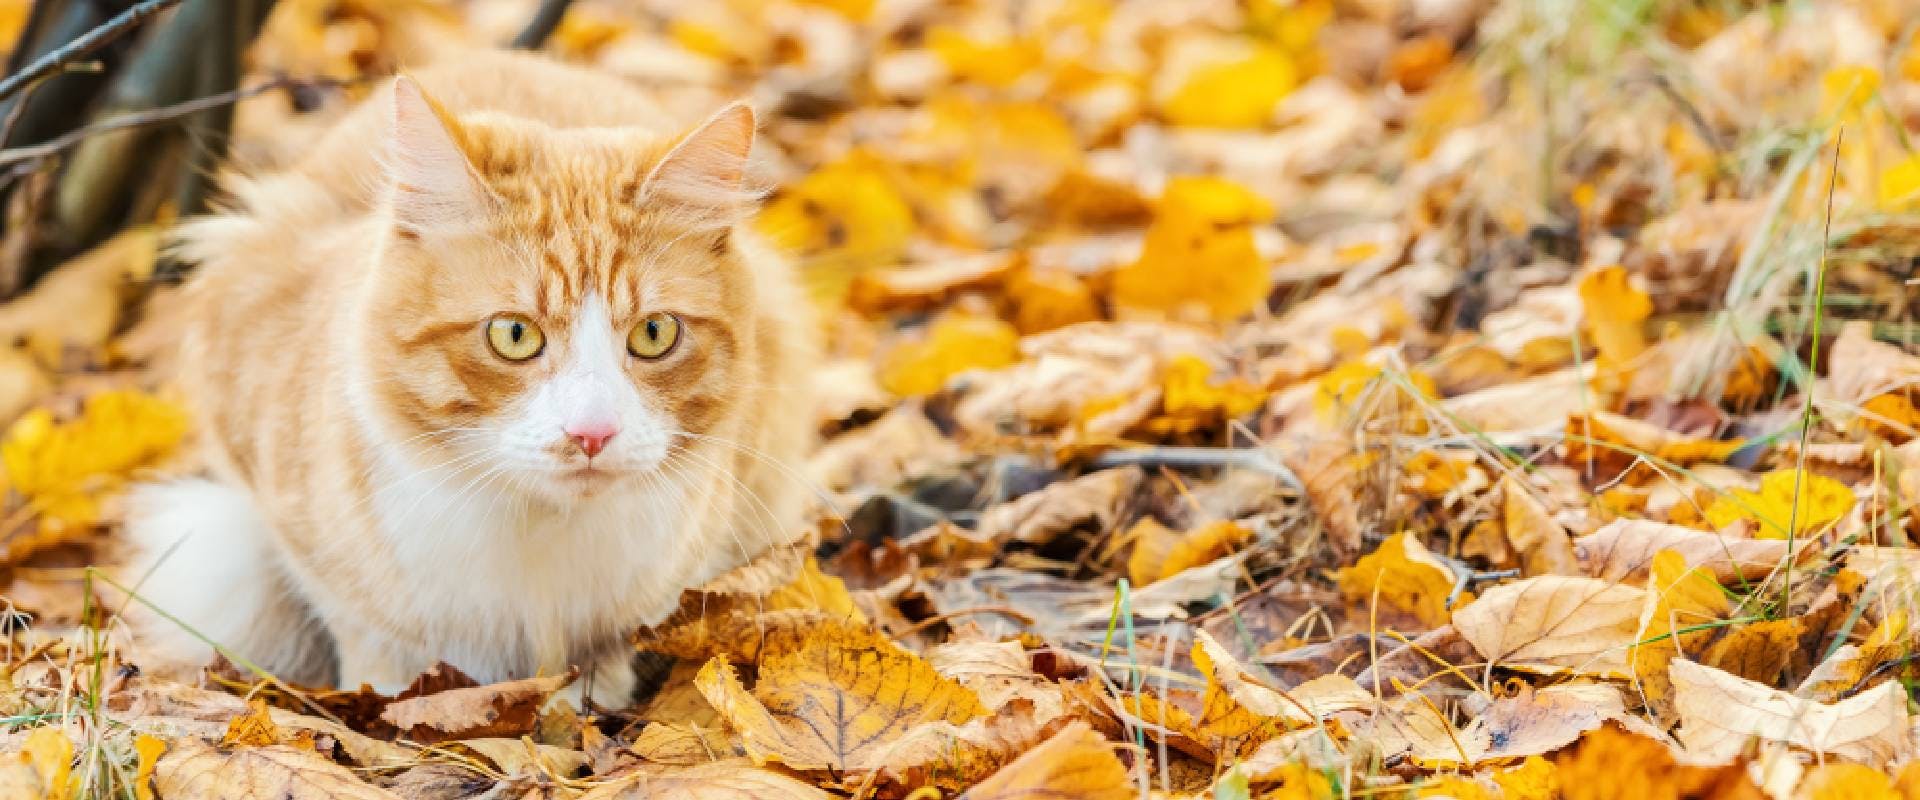 Ginger cat sitting amongst autumn leaves